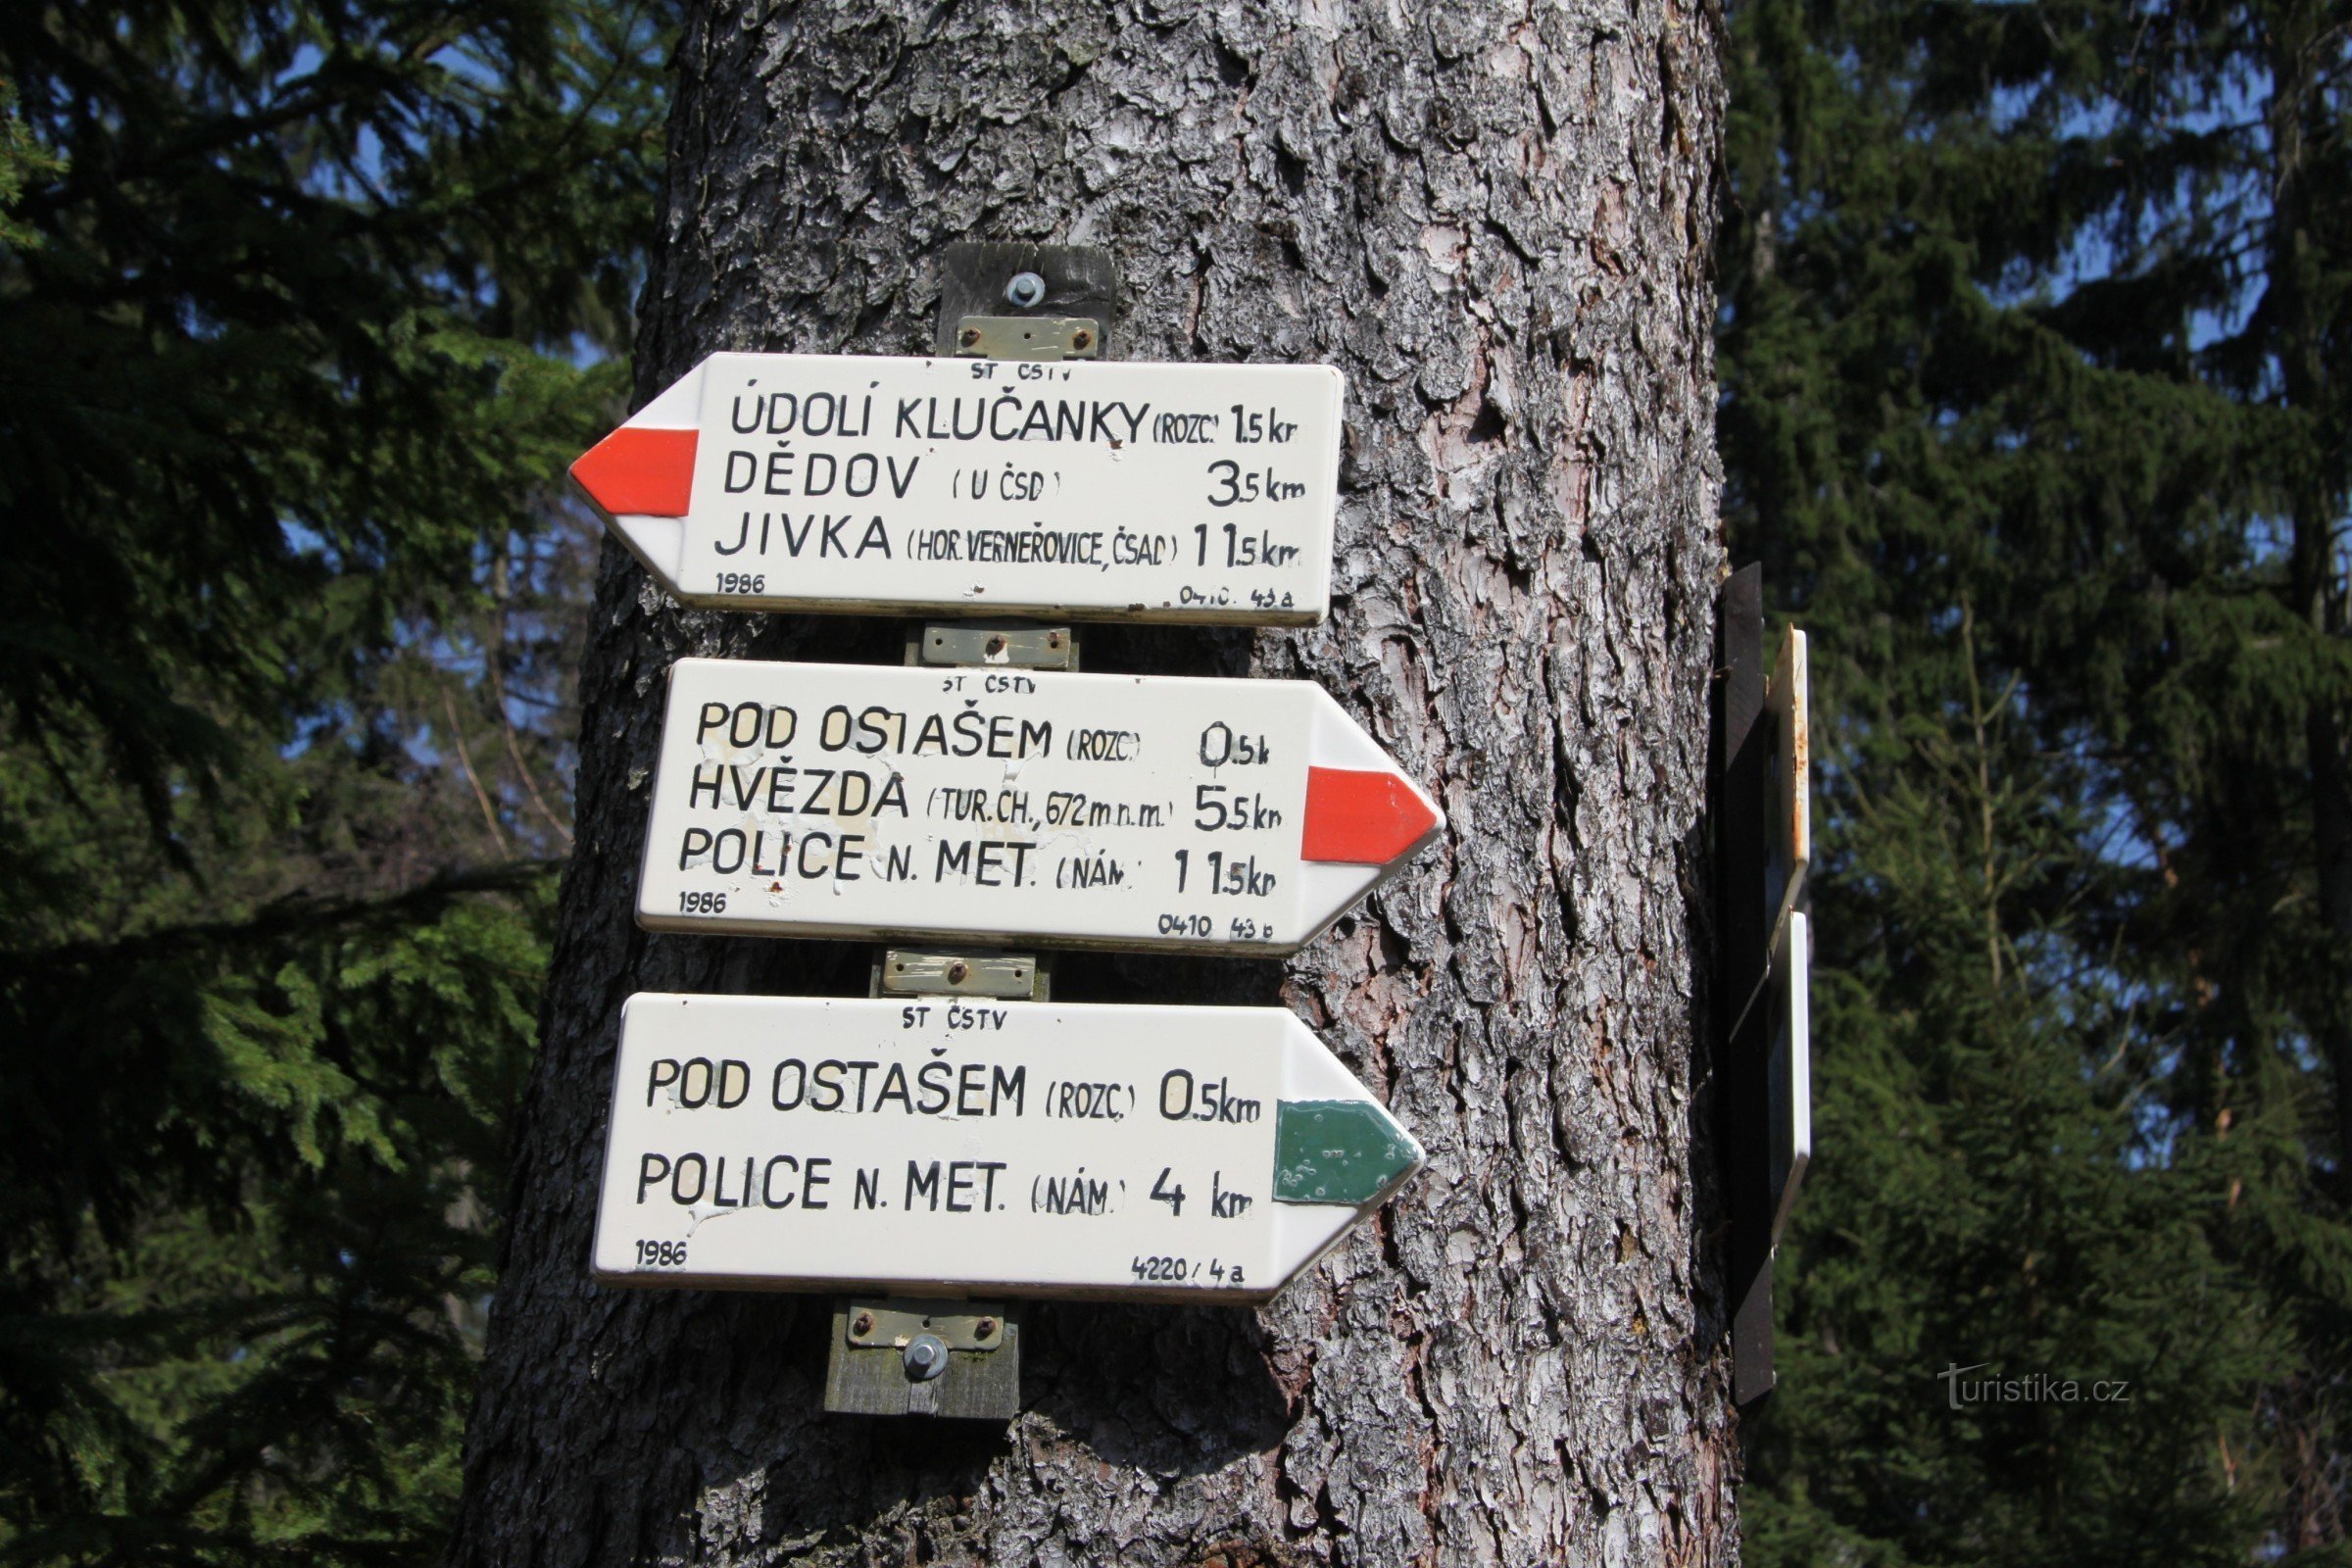 Signpost near Kočiče skal - Ostaš